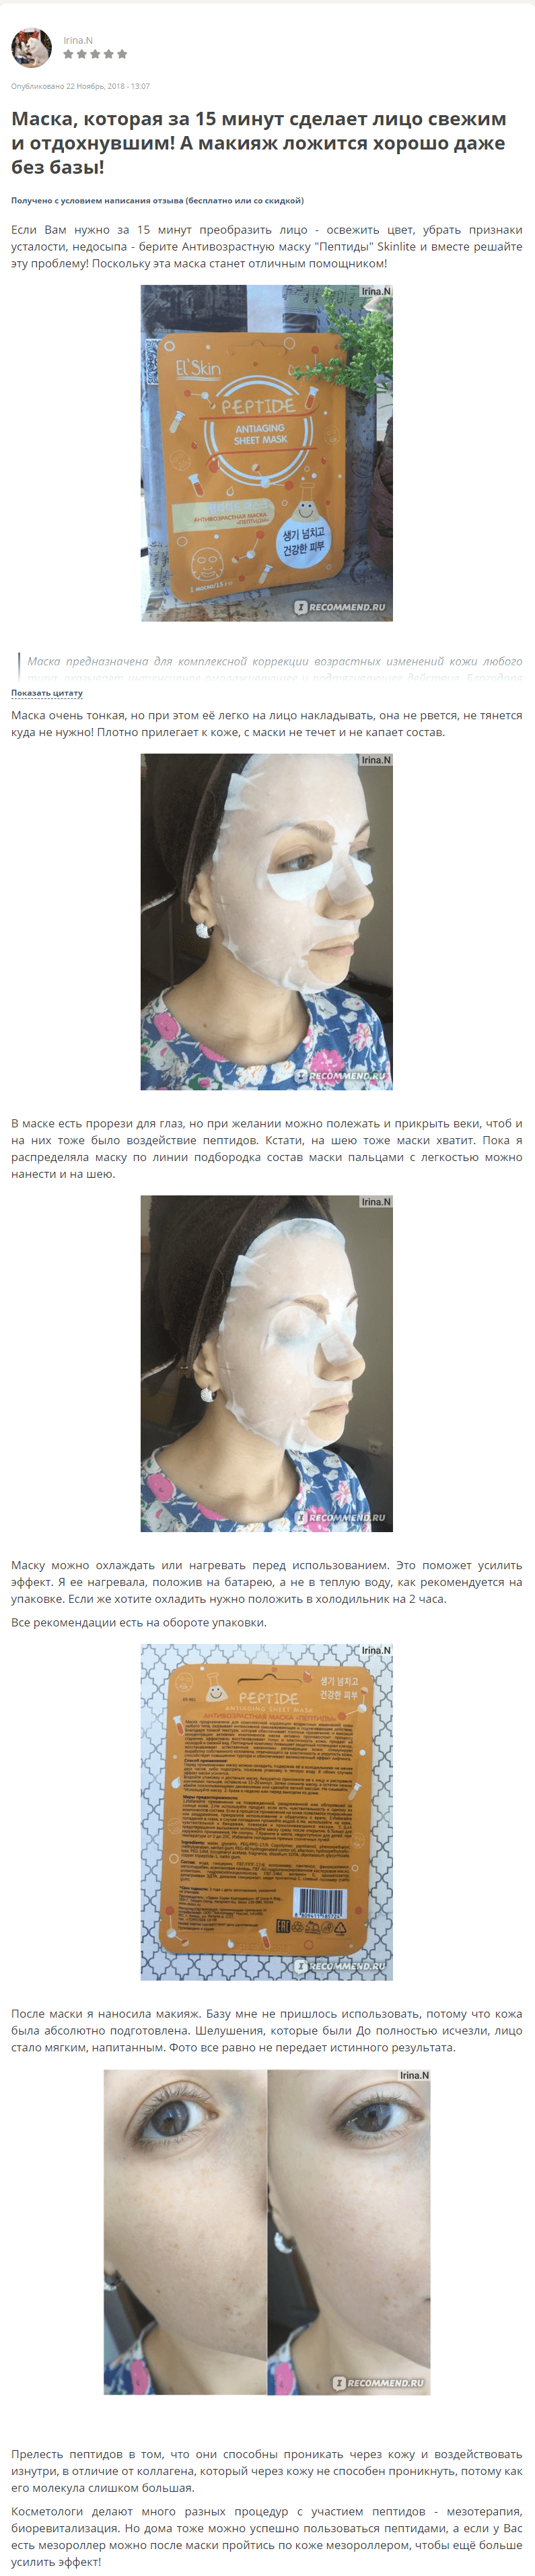 Skinlite El'Skin Antiaging Mask отзыв 1 (1)